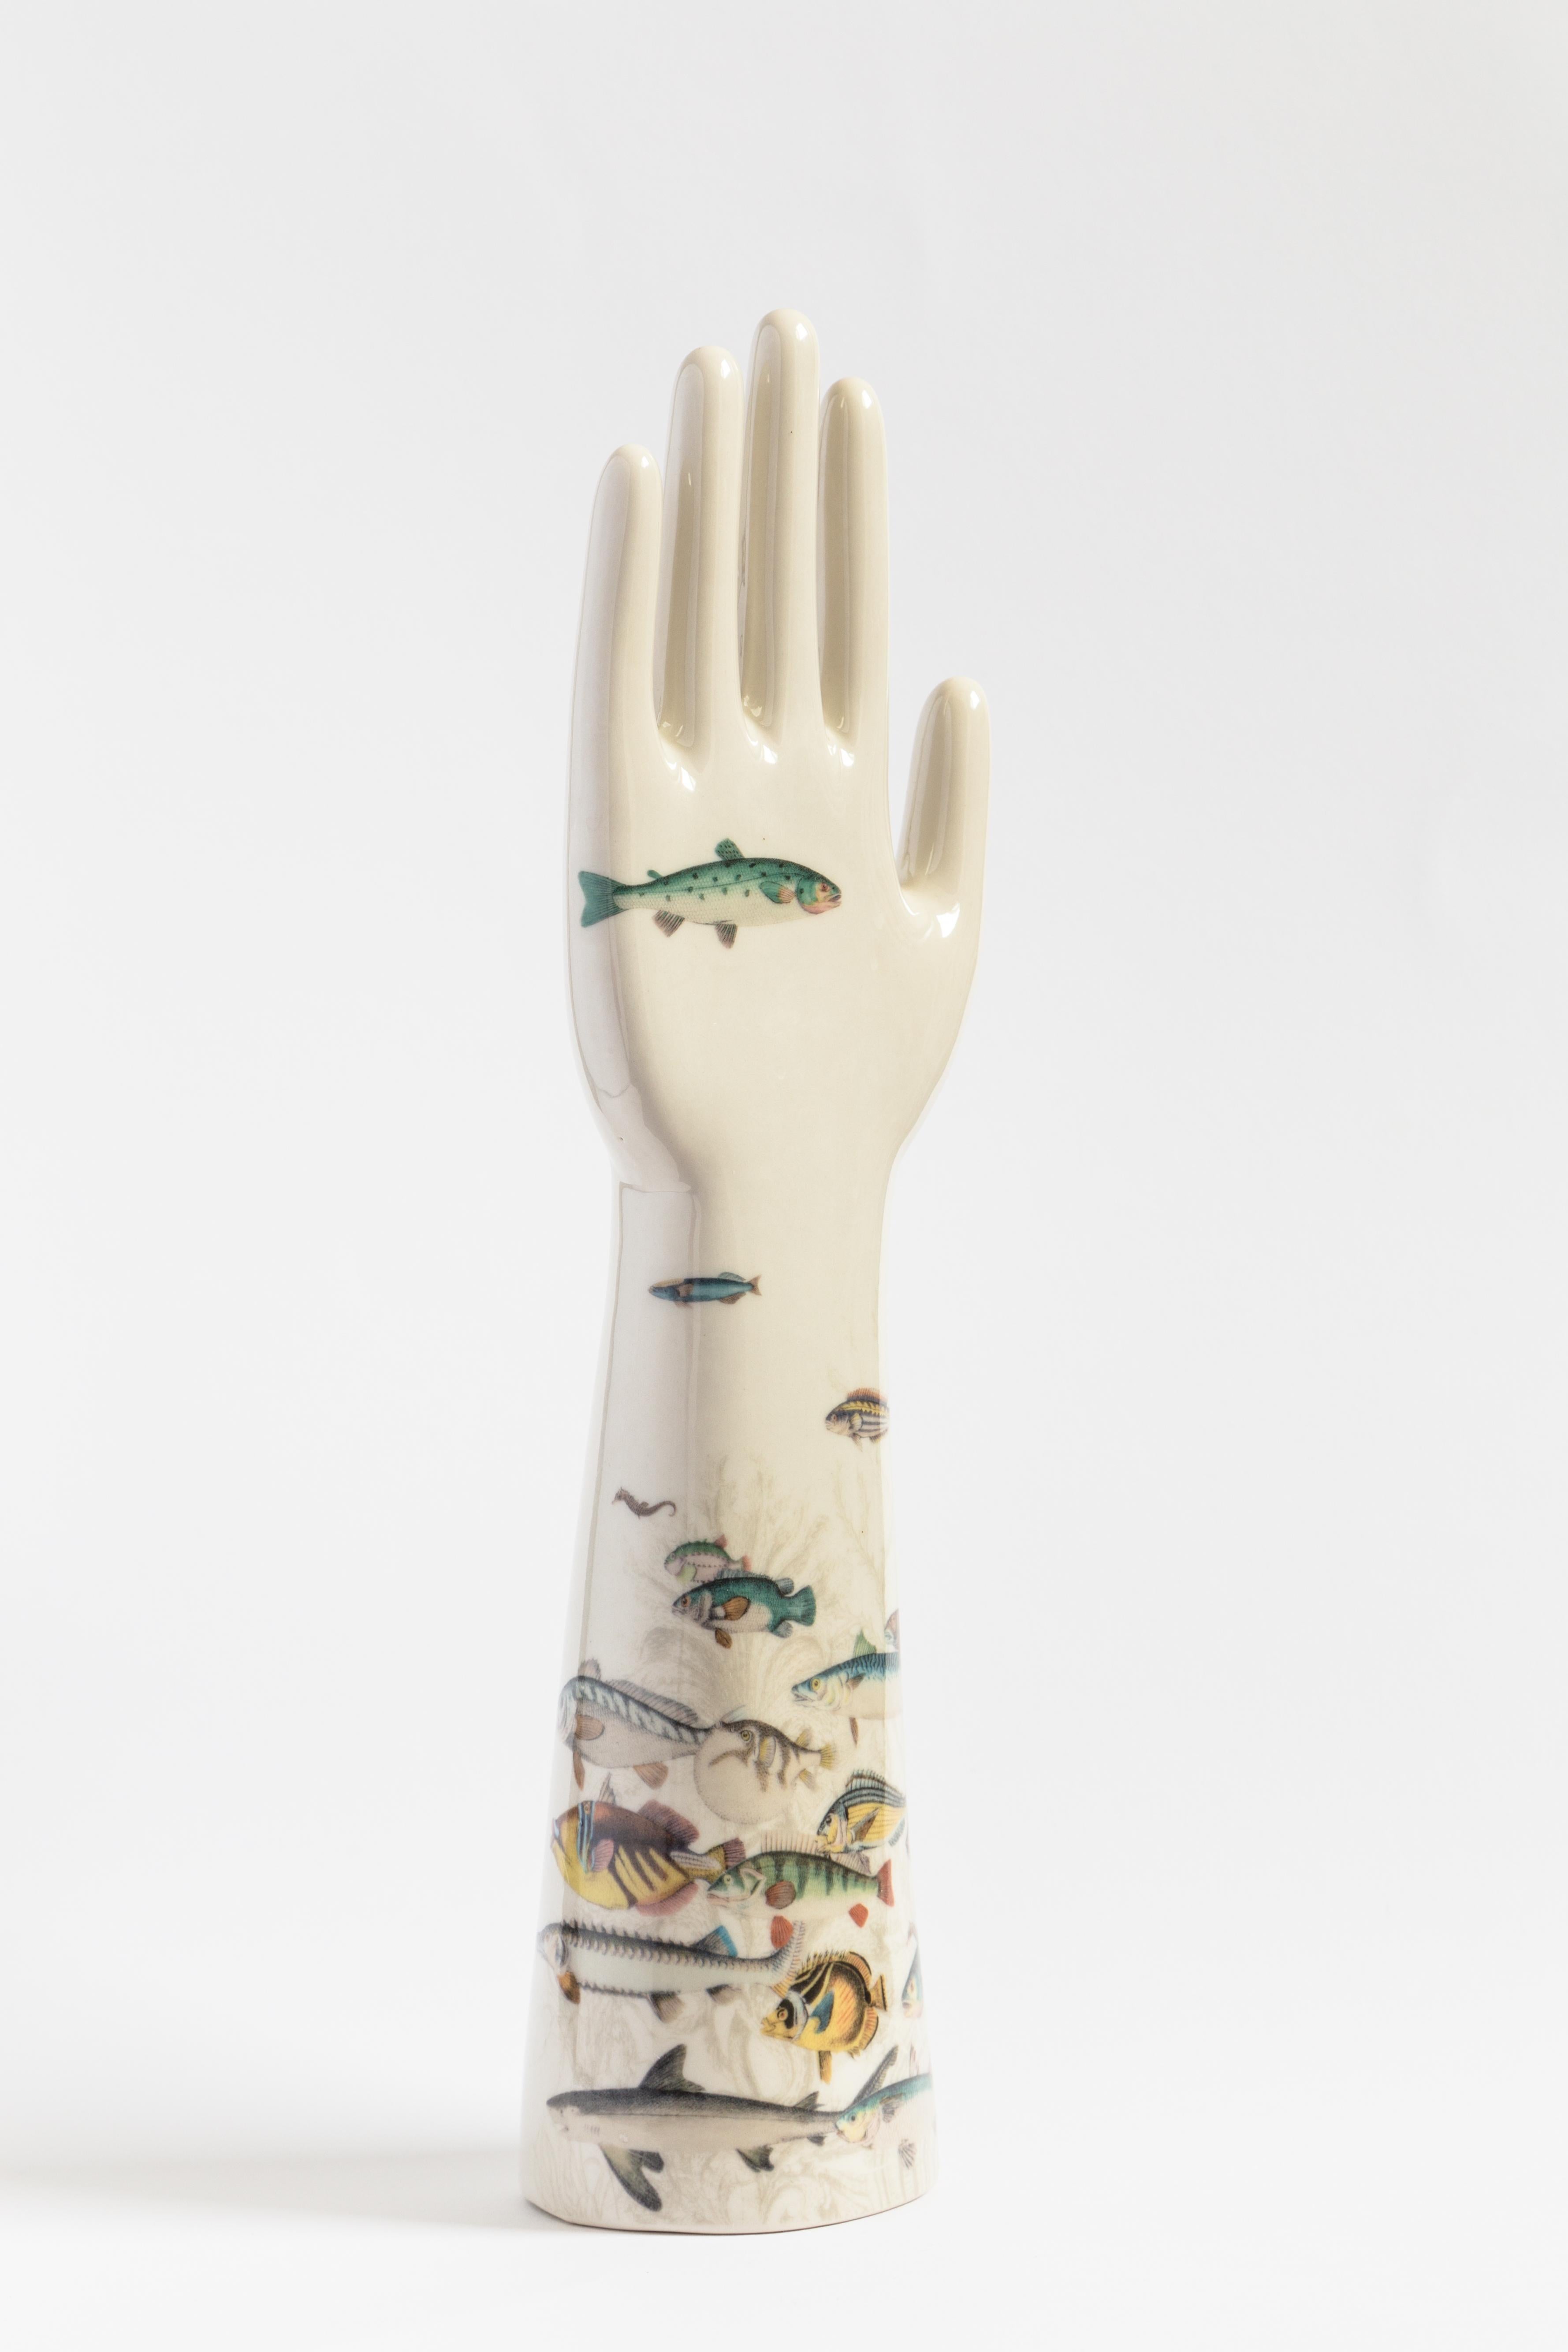 Cette sculpture saisissante fait partie de la série Anatomica de Vito Nesta, qui présente des objets décoratifs aux formes anatomiques simples et essentielles, caractérisés par des couleurs audacieuses et contrastées et un flair moderne. Réalisée en